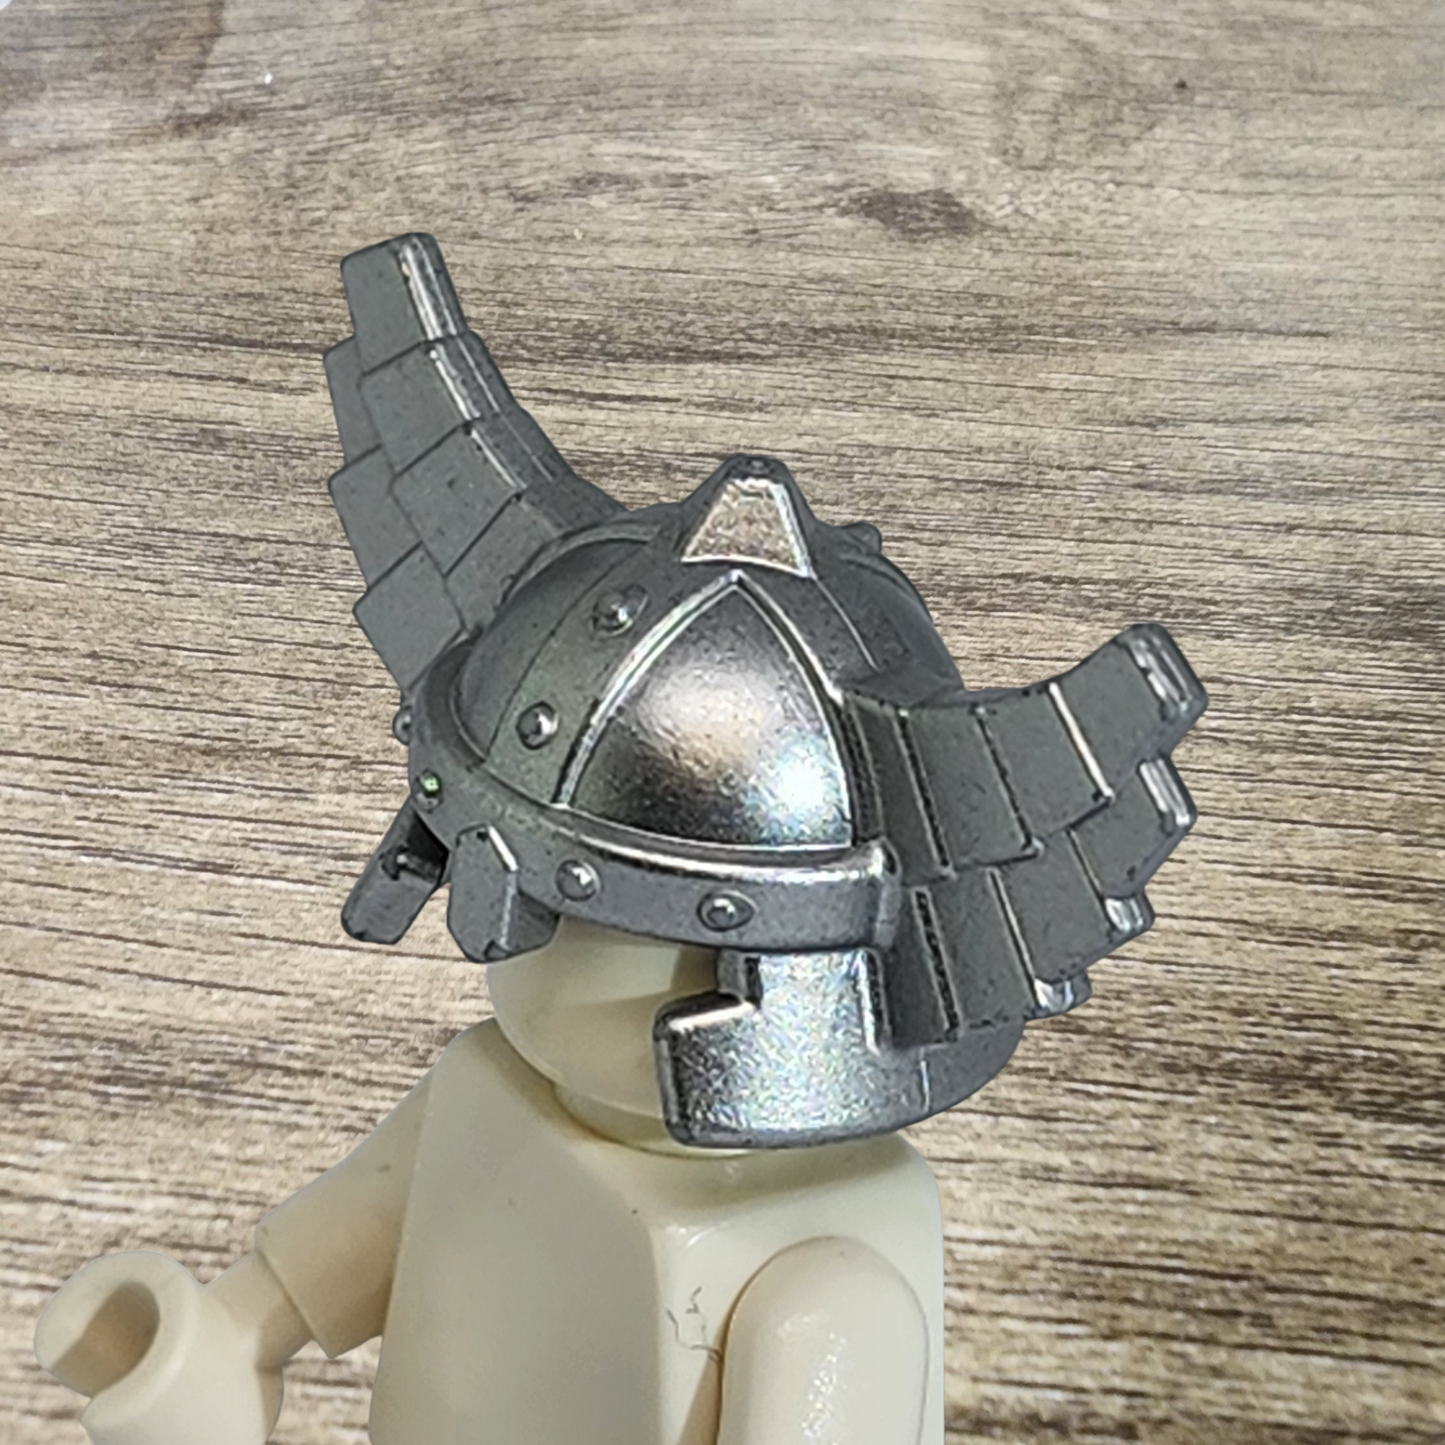 Helmet with Wings Castle Troll Lego Minifigure 60747 Metallic Silver